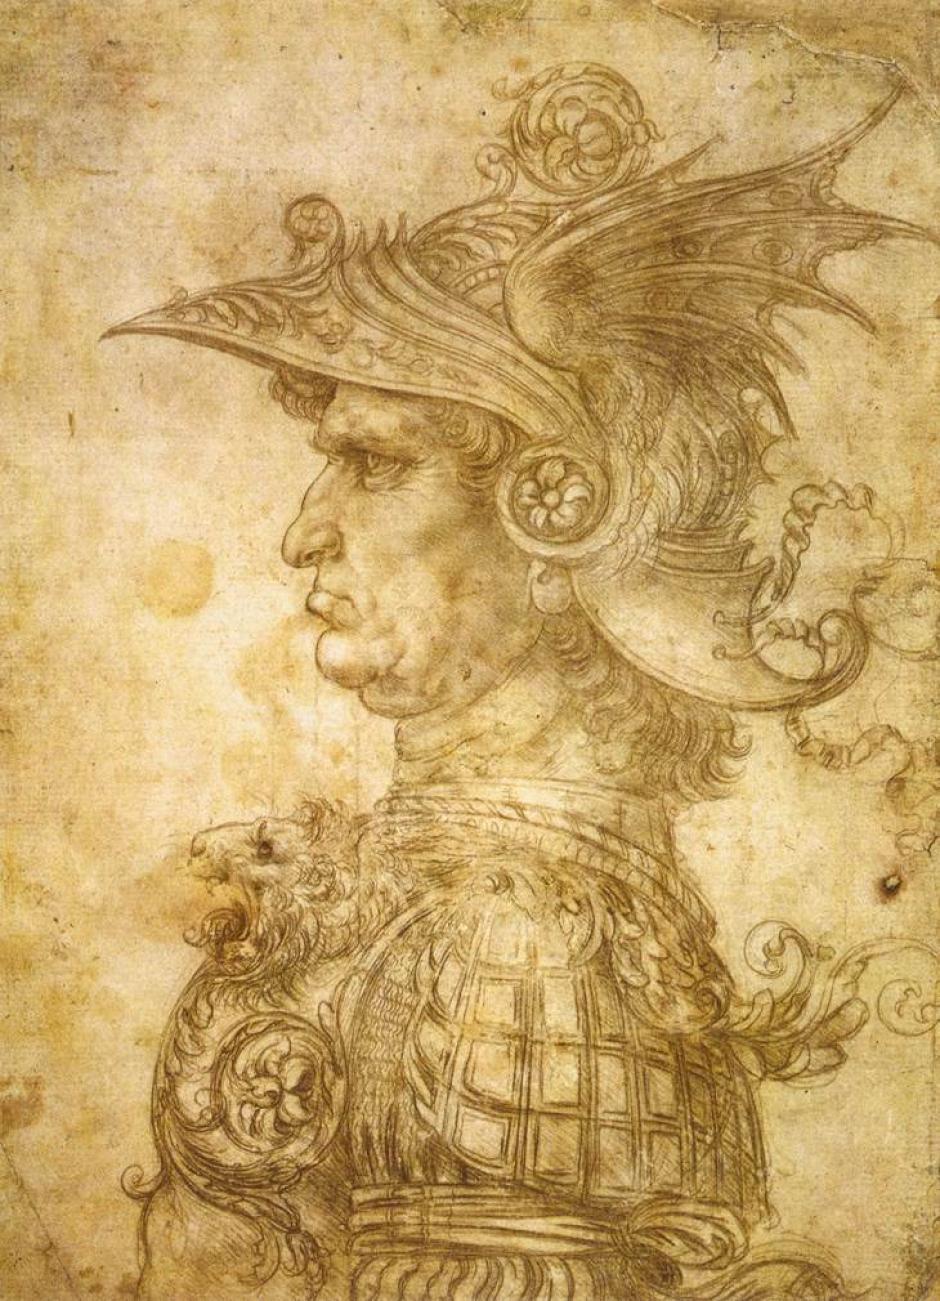 Profilo di capitano antico de Leonardo da Vinci, también conocido como il Condottiero, 1480. Condottiero significaba "jefe de mercenarios" en Italia durante la Baja Edad Media y el Renacimiento.